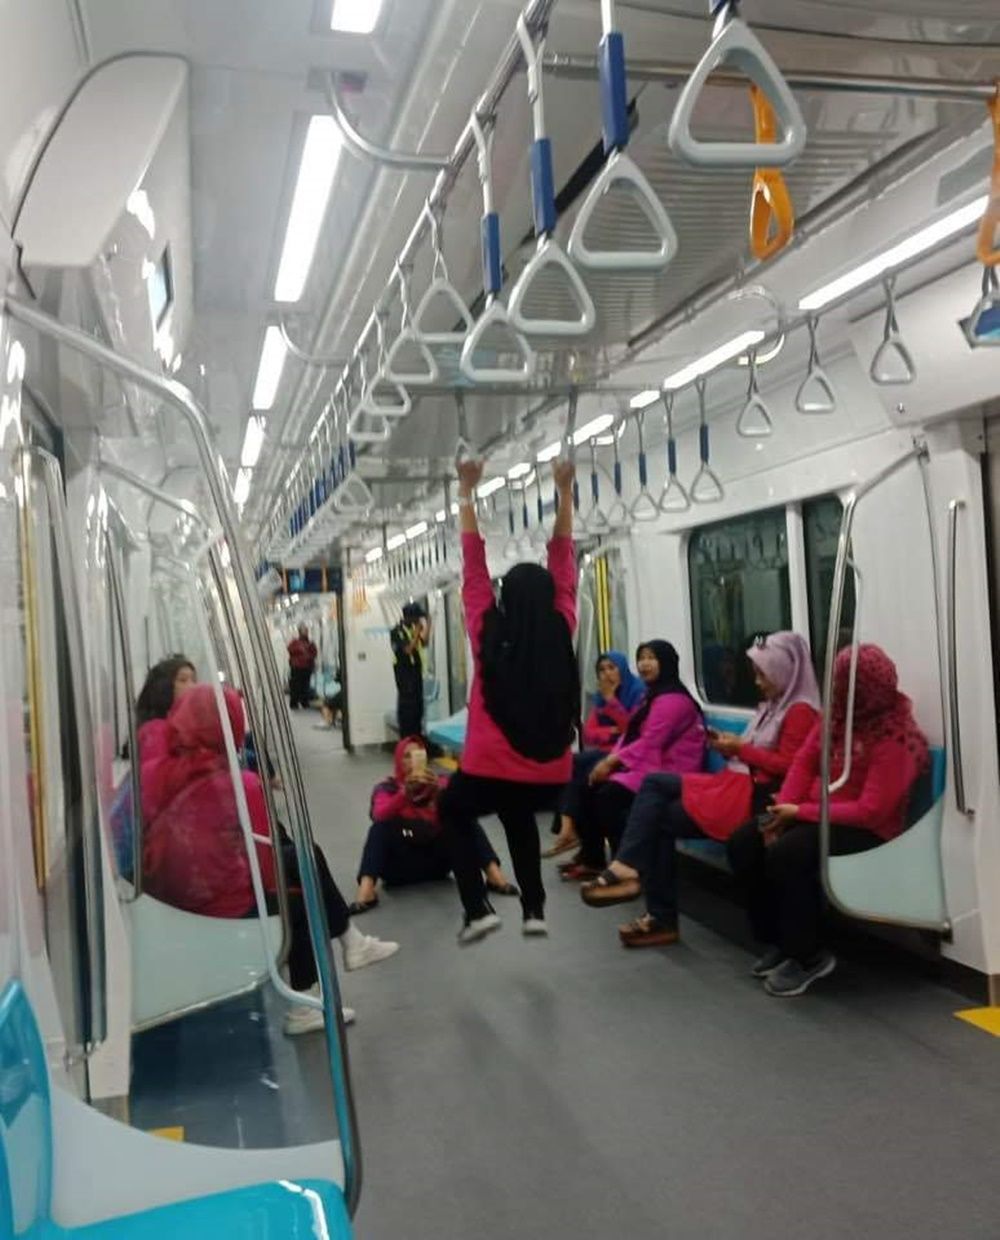 MRT Jakarta Diresmikan, Warganet Indonesia Terbagi Dua Kubu